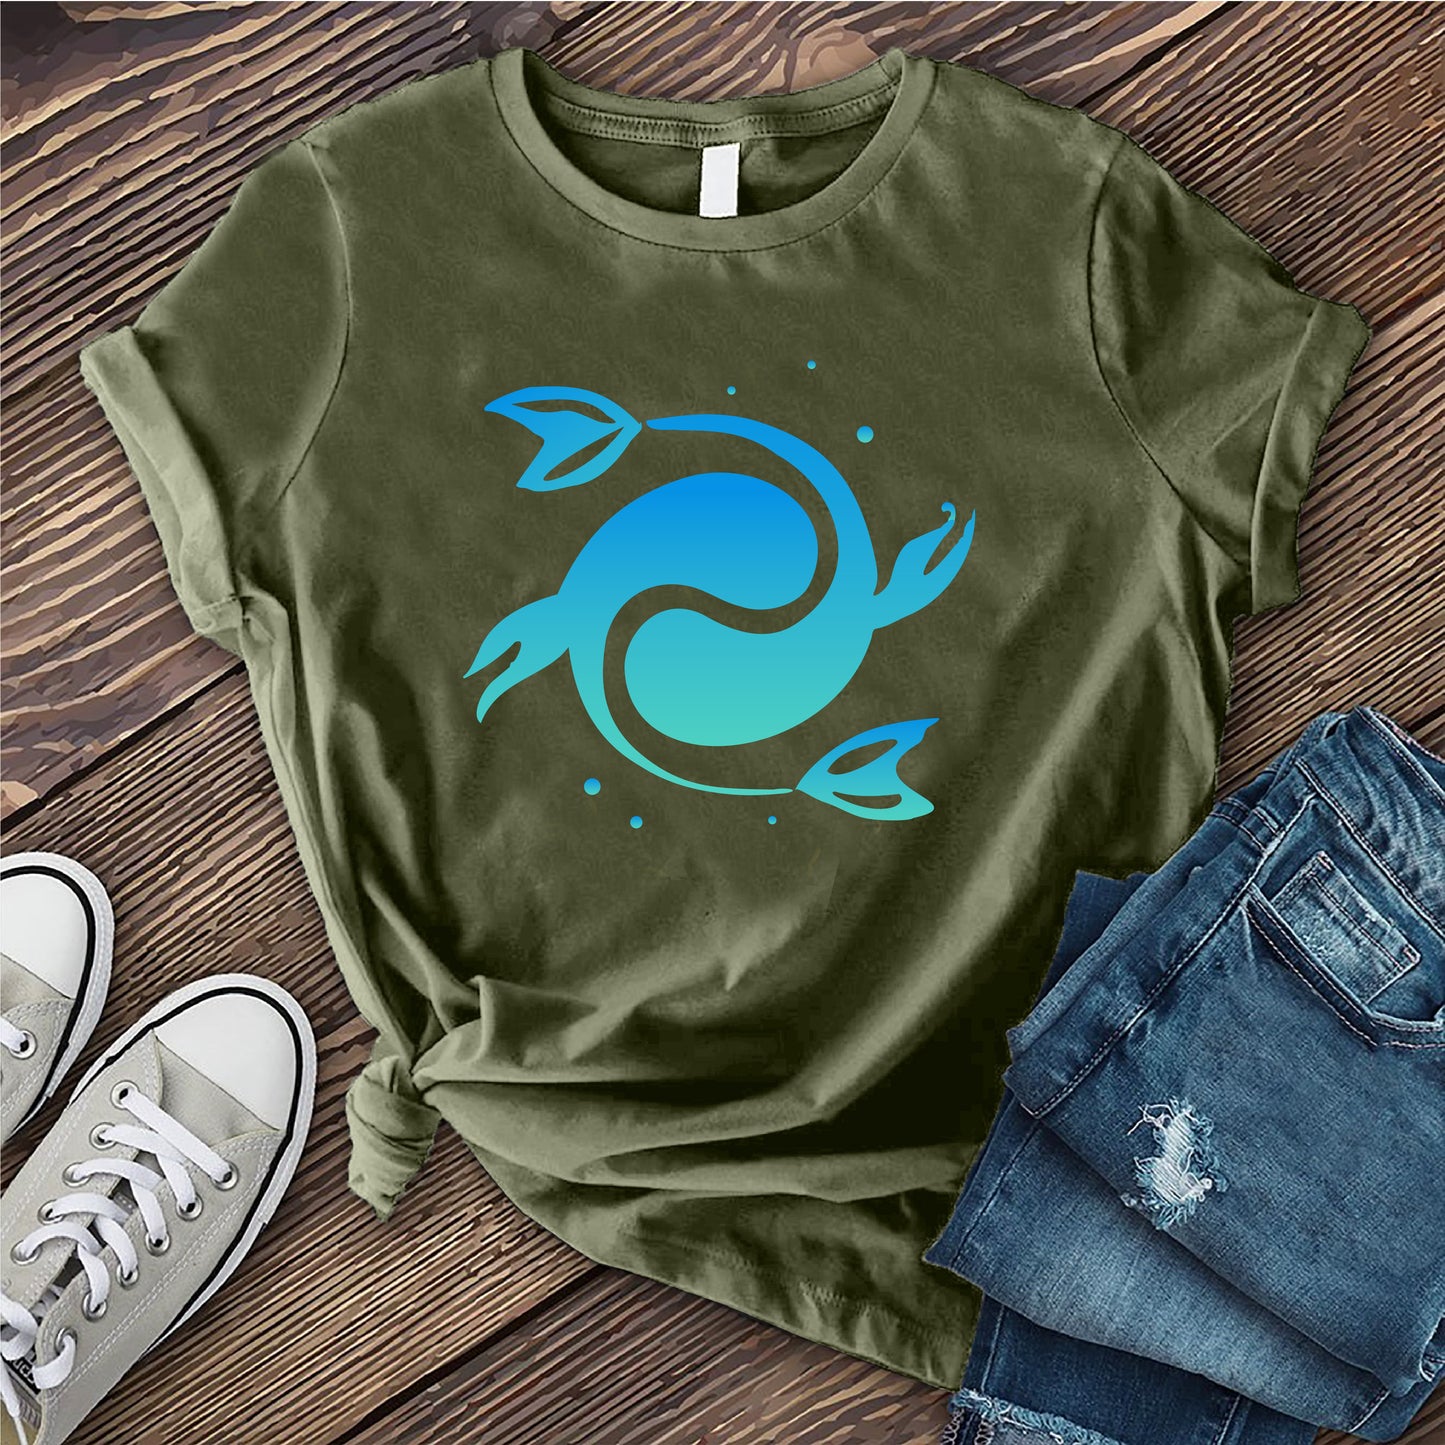 Ombre Pisces T-shirt